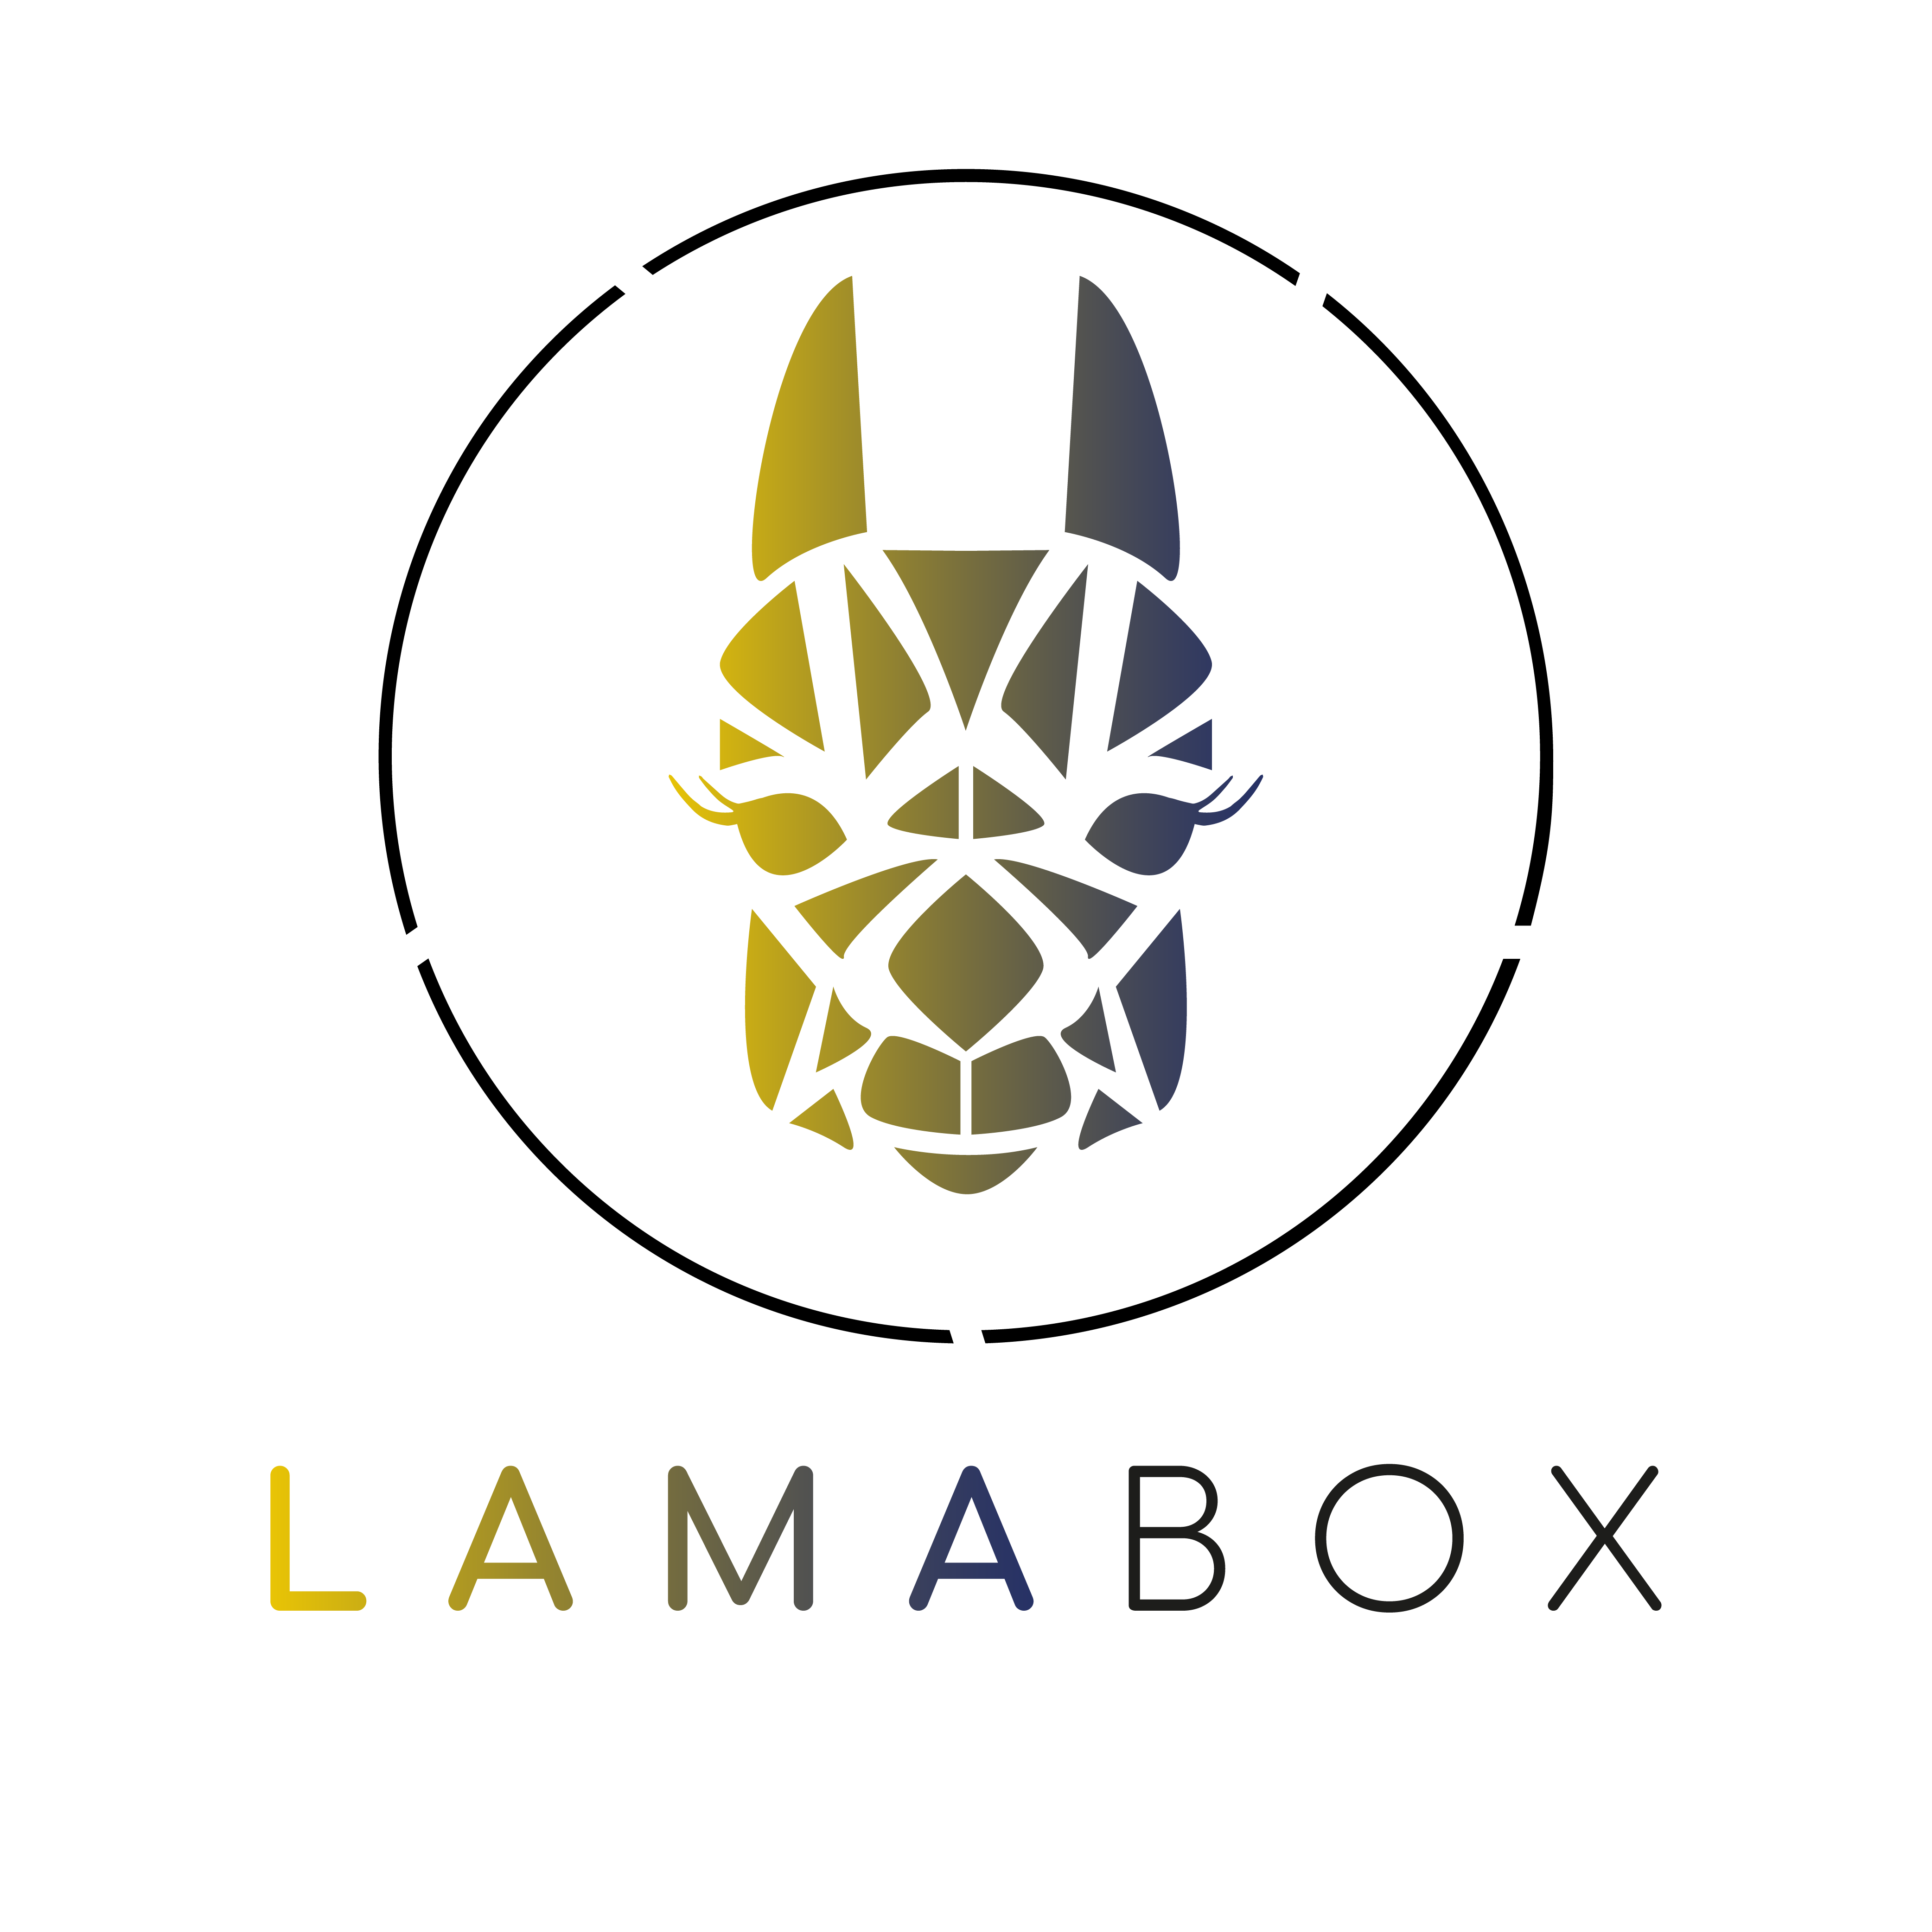 LAMABOX